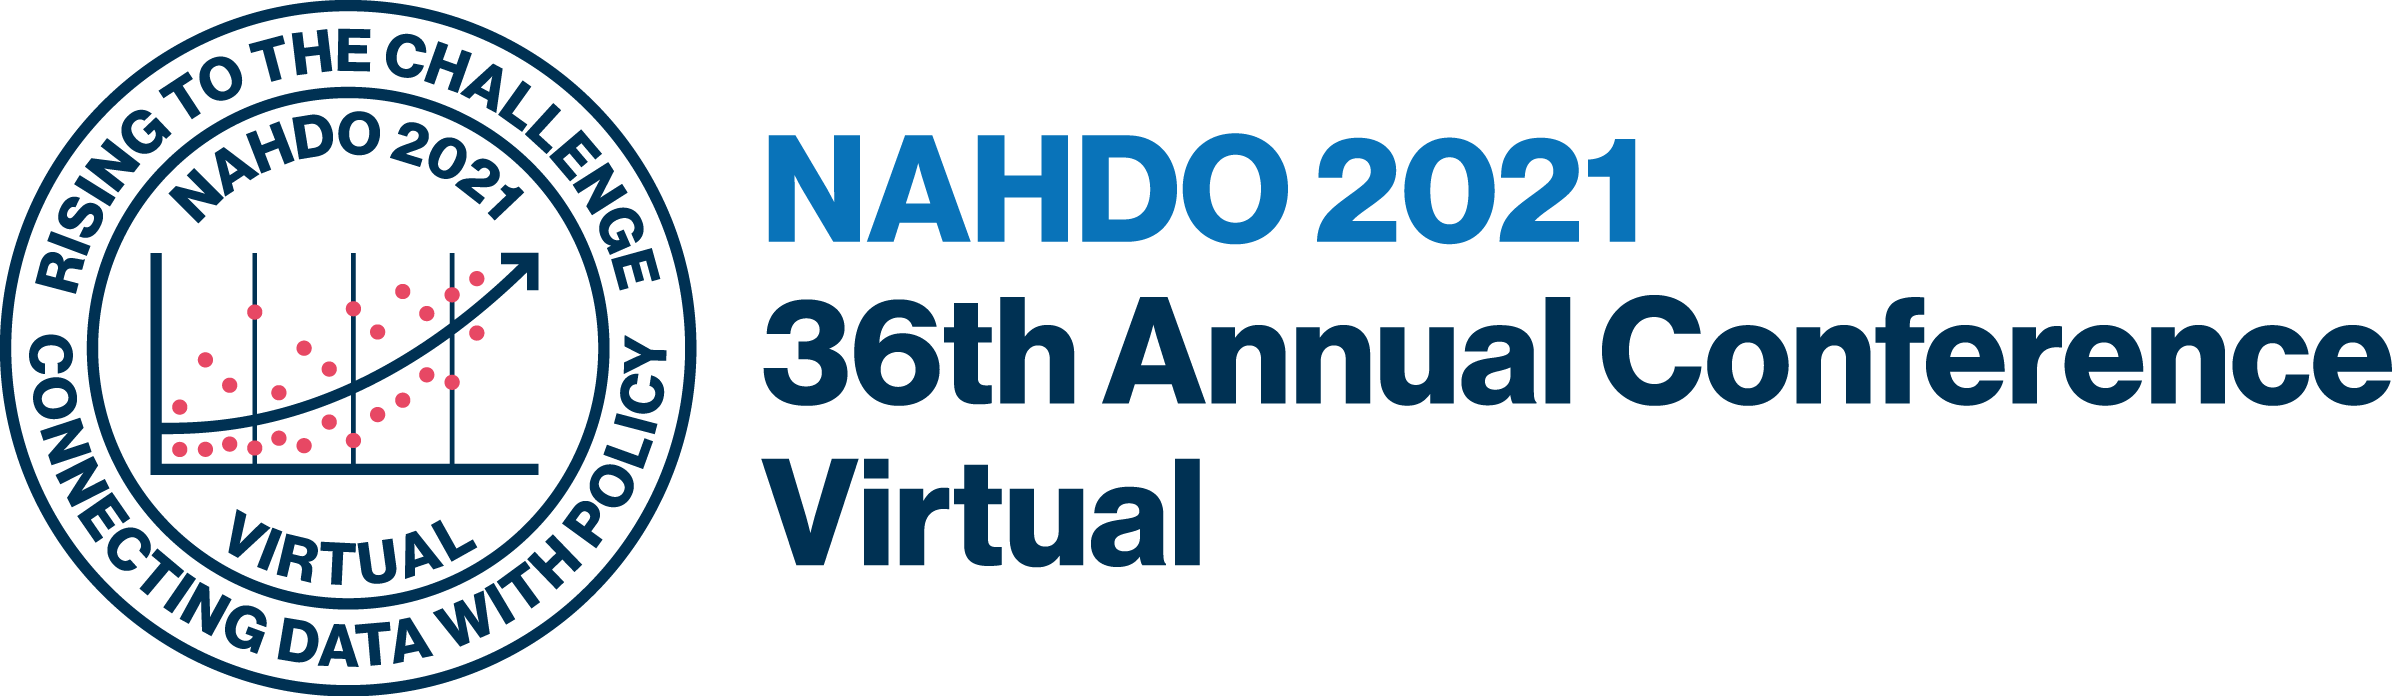 NAHDO 2021 35 Annual Conference Virtual Logo